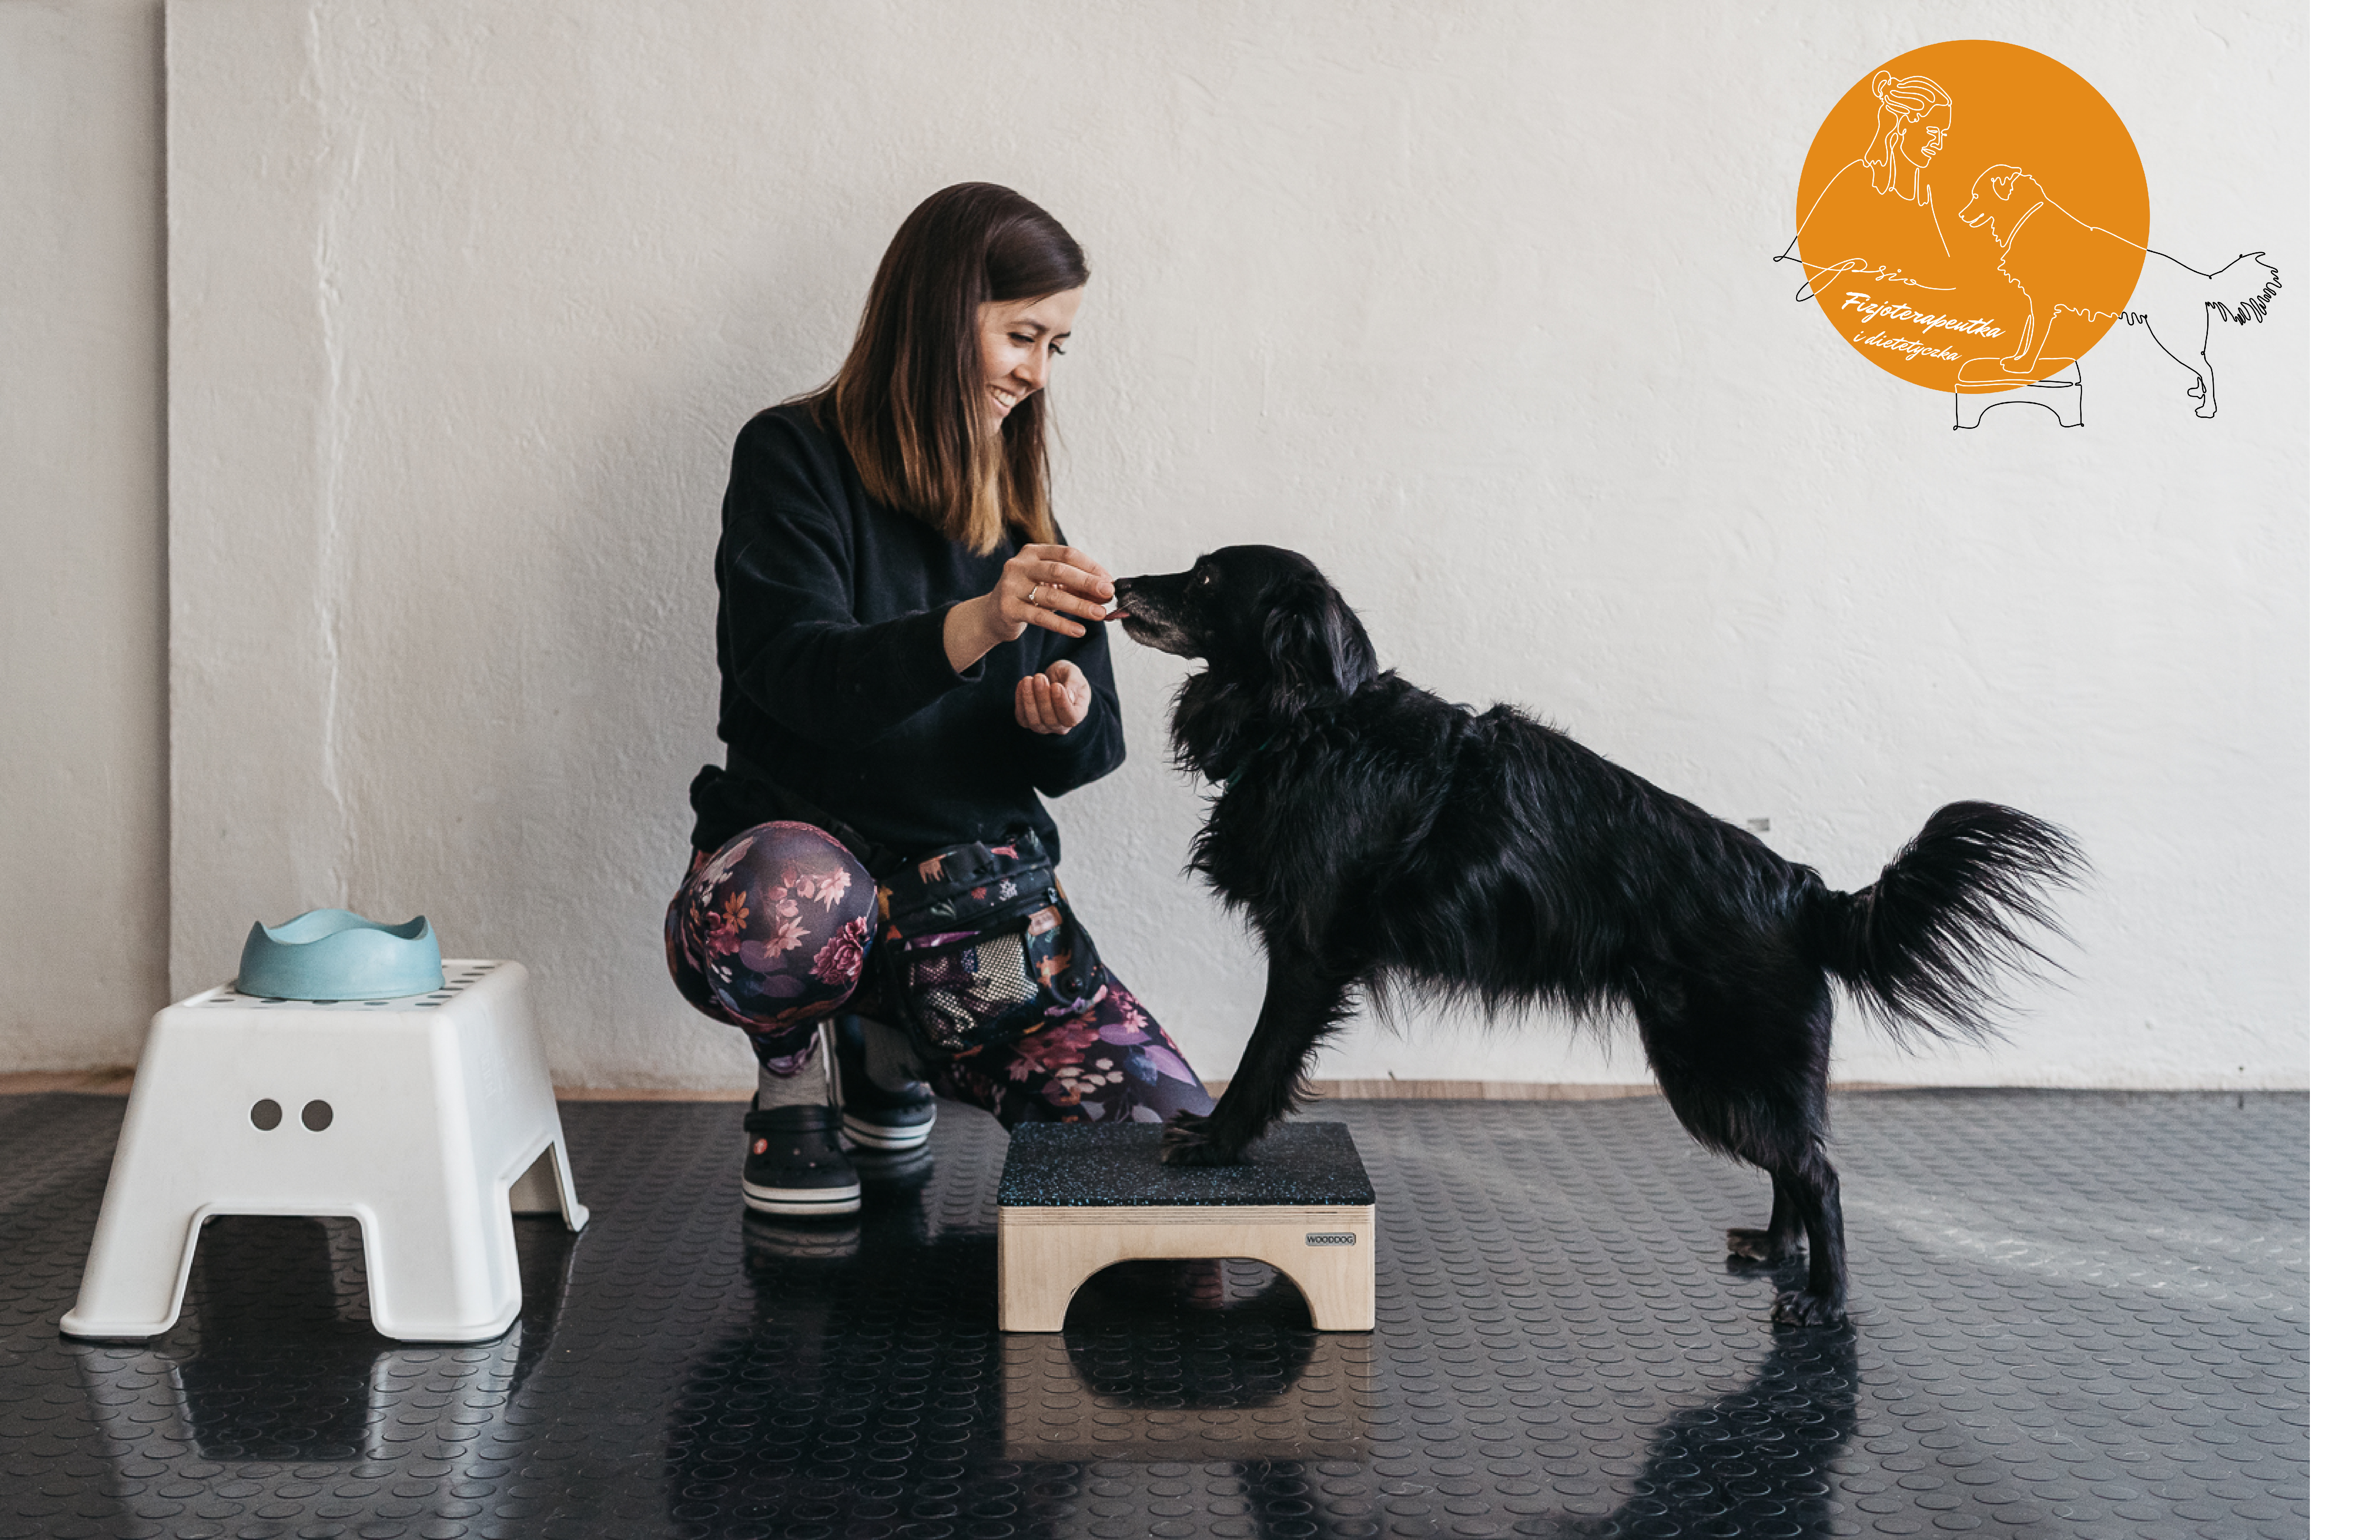 Zoofizjoterapeutka pracująca z czarnym psem podczas ćwiczenia równowagi, z miską i stopniem do rehabilitacji w tle i logo 'PsiaFizjoterapeutka' w rogu.